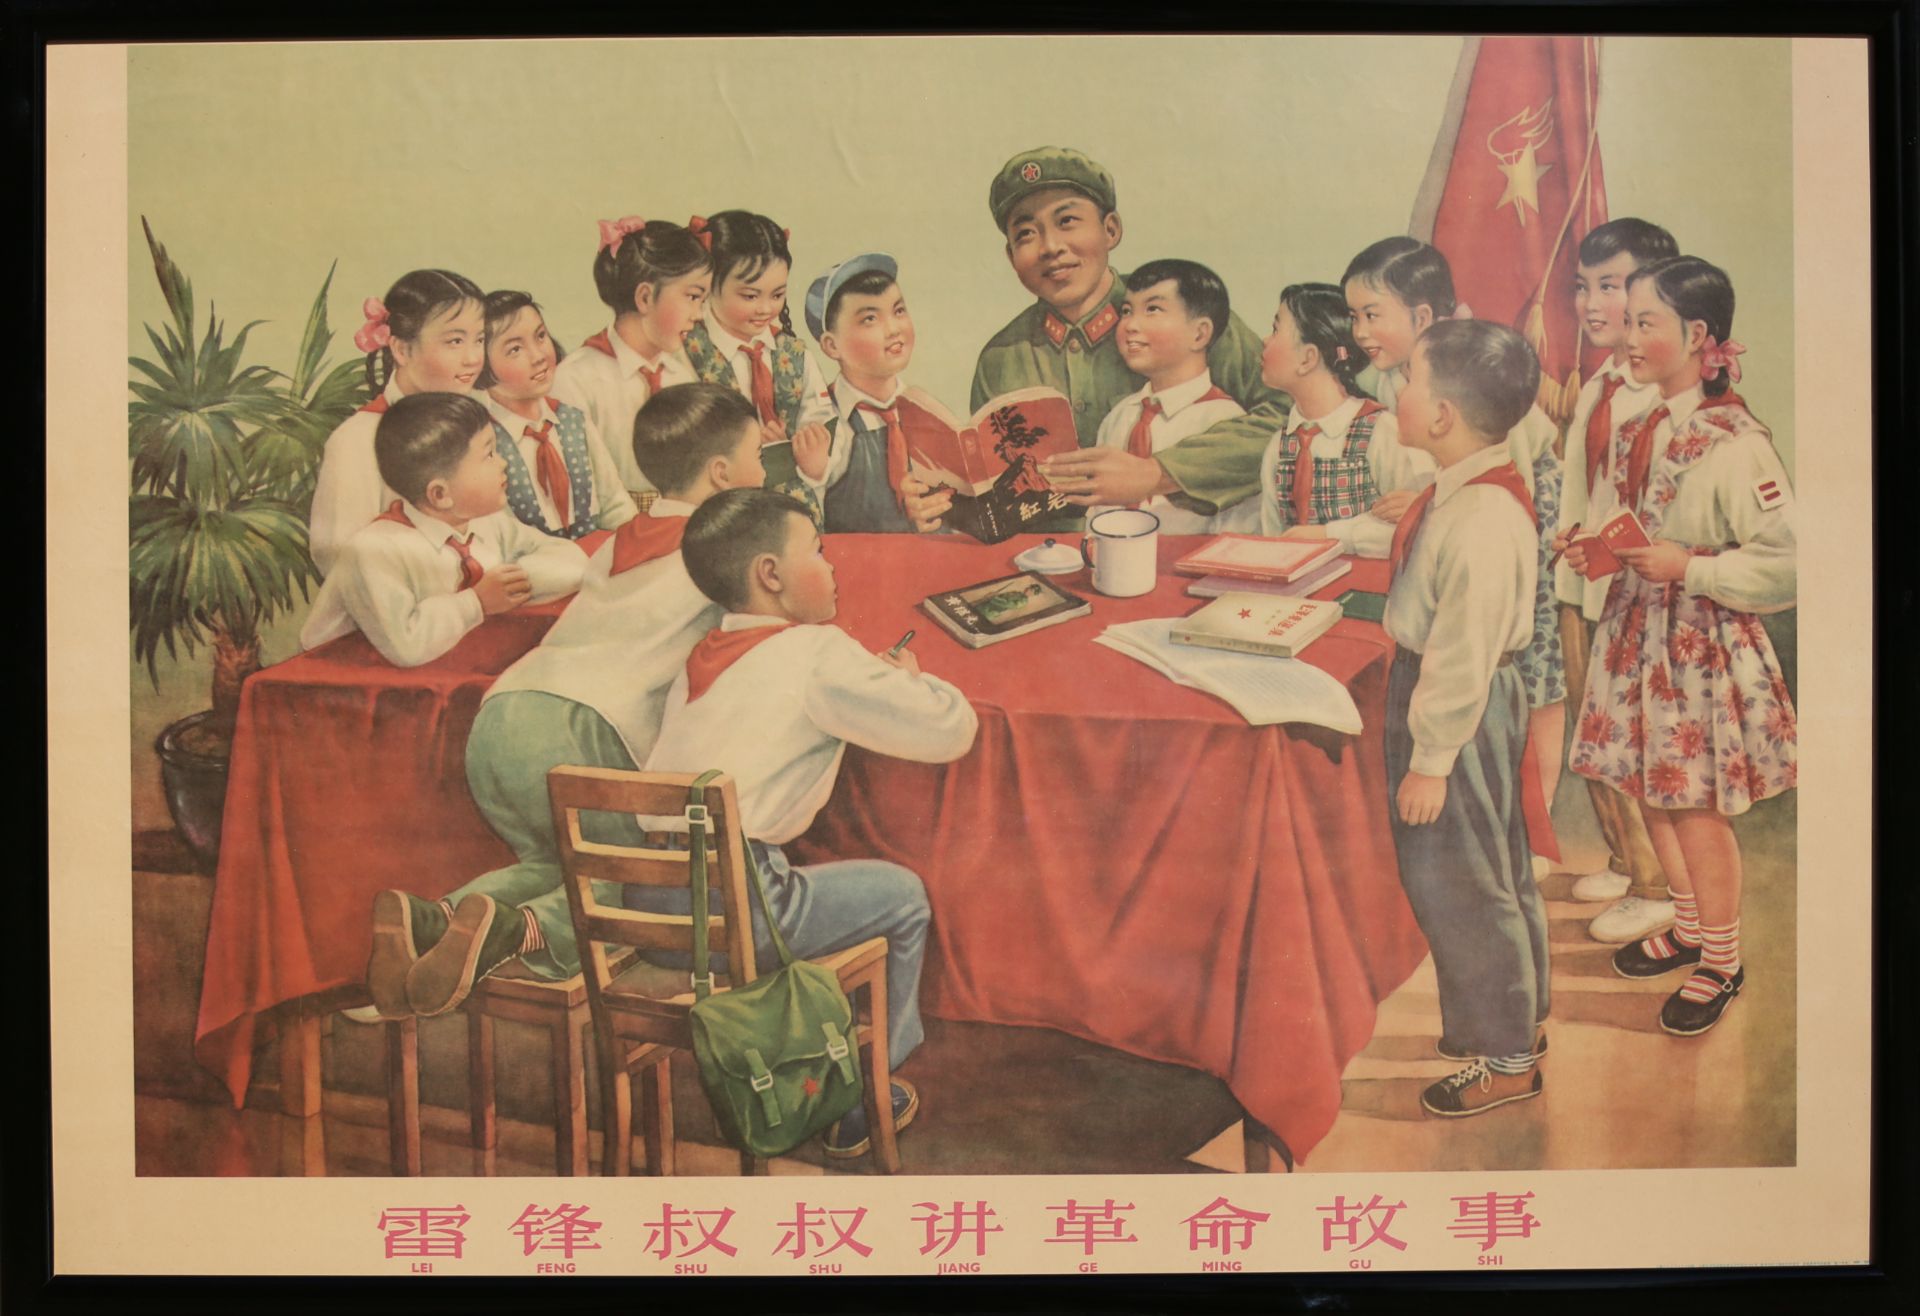 17 Affiches de propagande de la révolution culturelle chinoise Encadrée 75cm x 52cm - Bild 6 aus 17